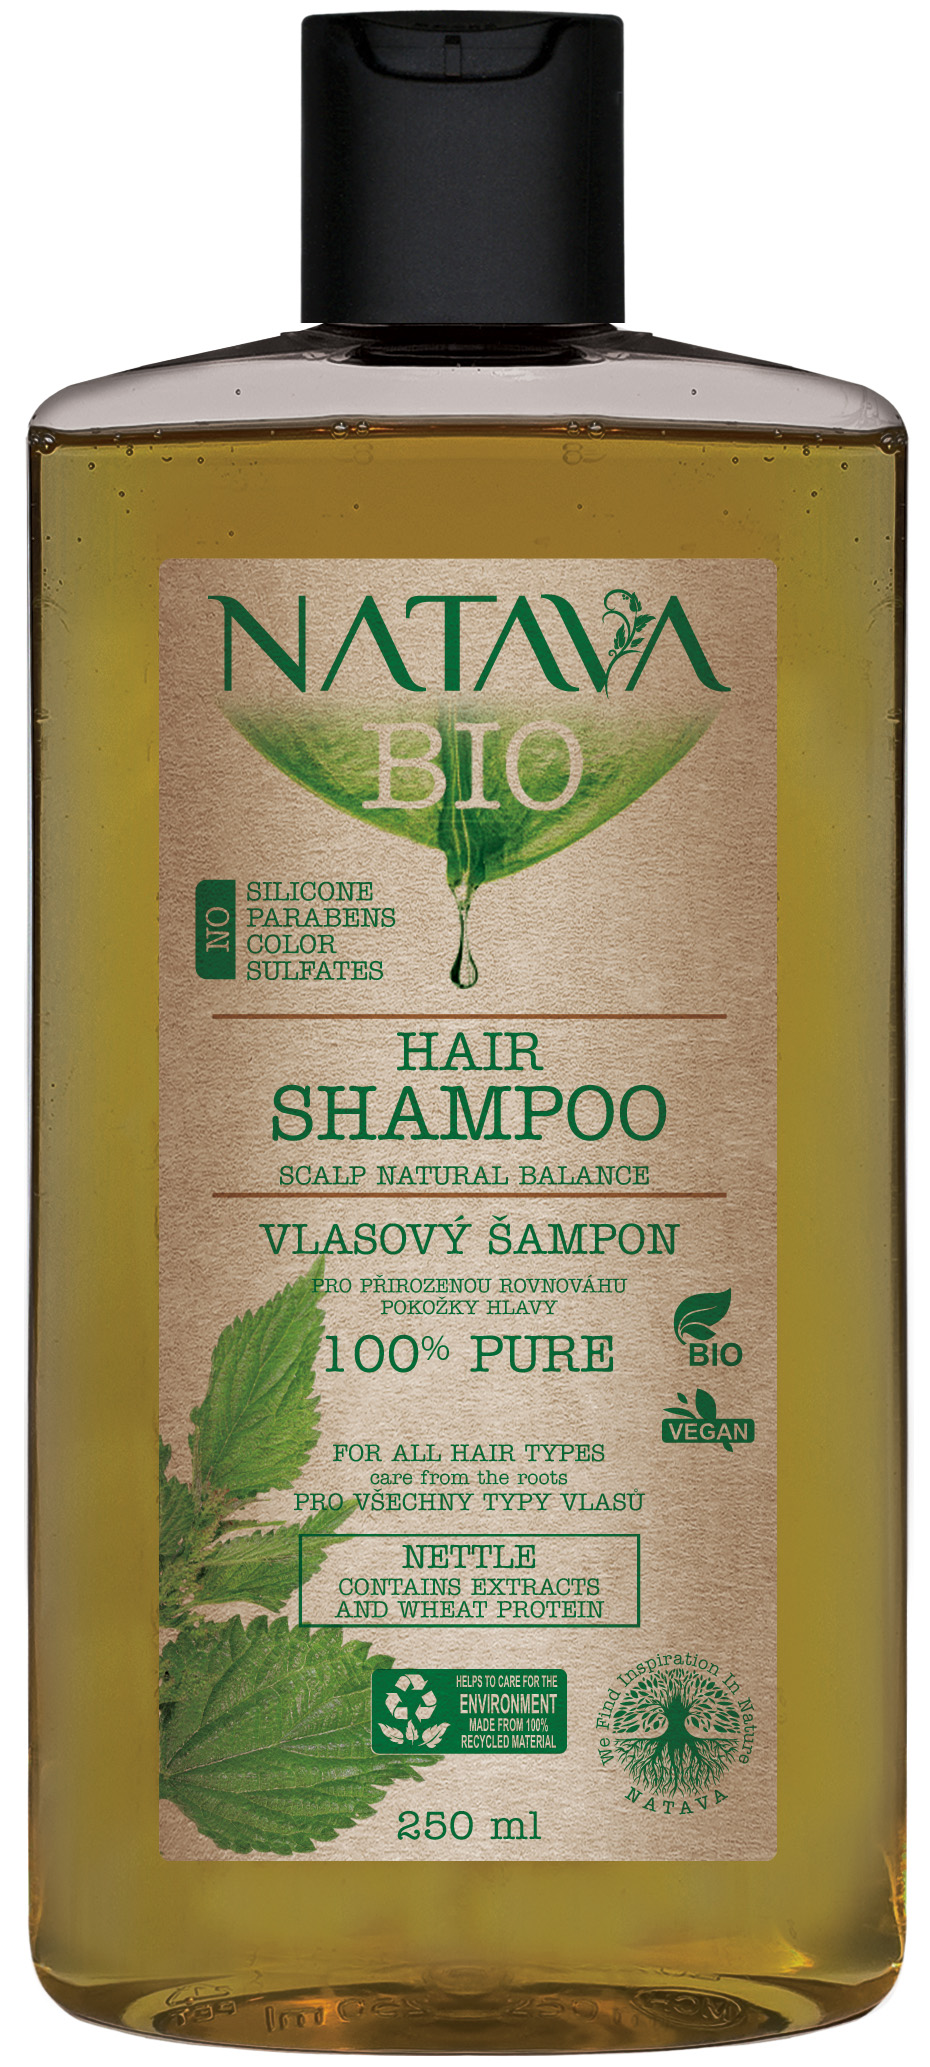 Šampón Žihľava - prirodzená rovnováha vlasovej pokožky